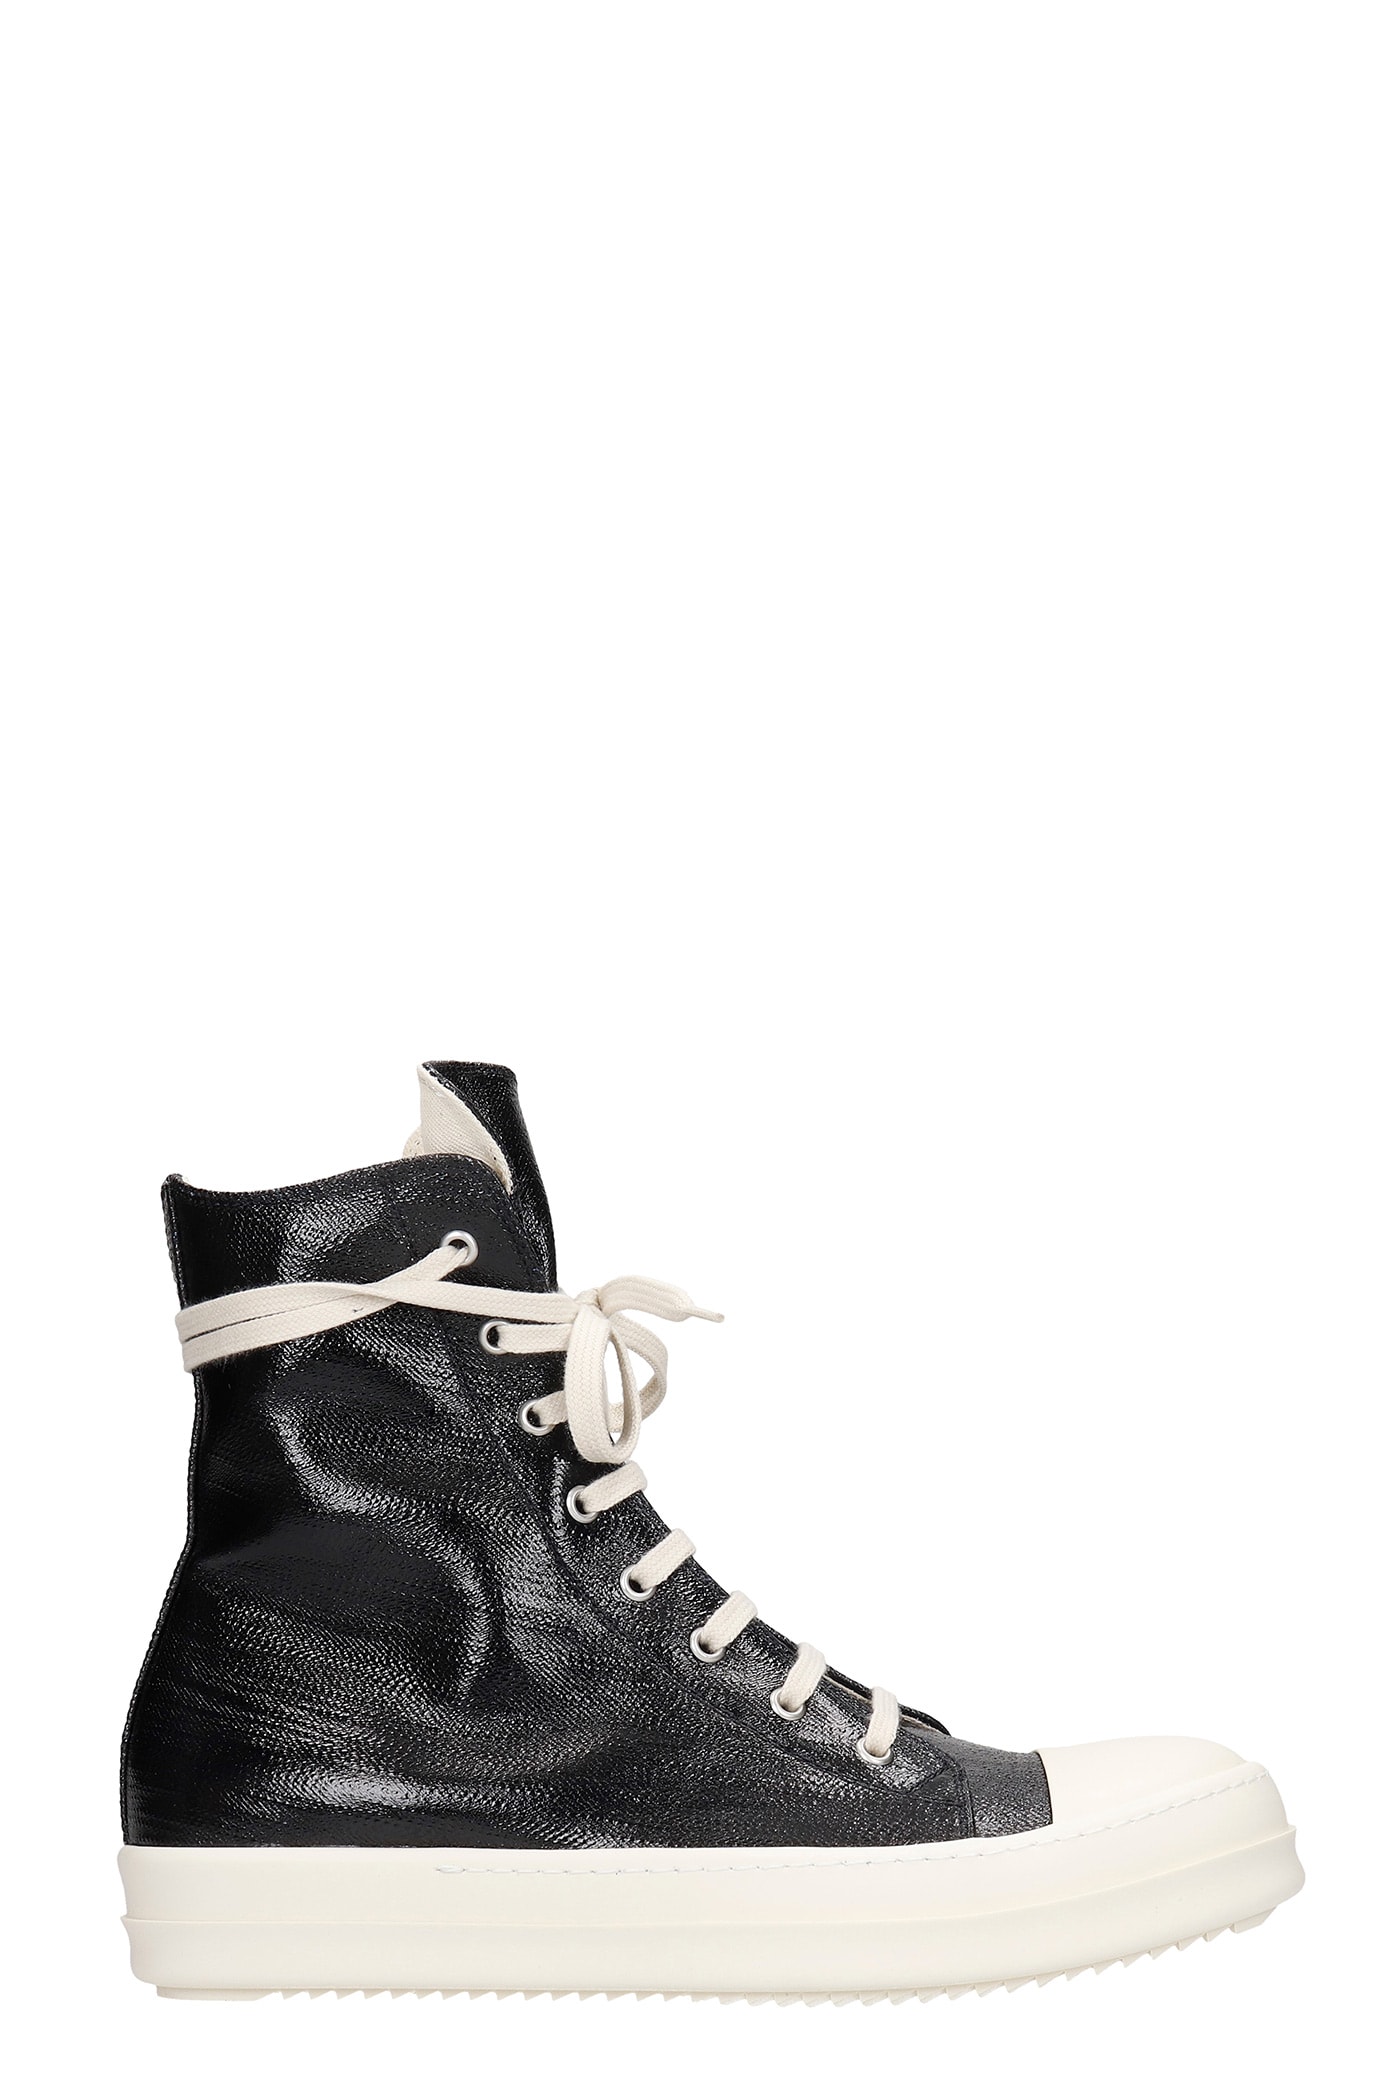 DRKSHDW Sneaks Sneakers In Black Leather